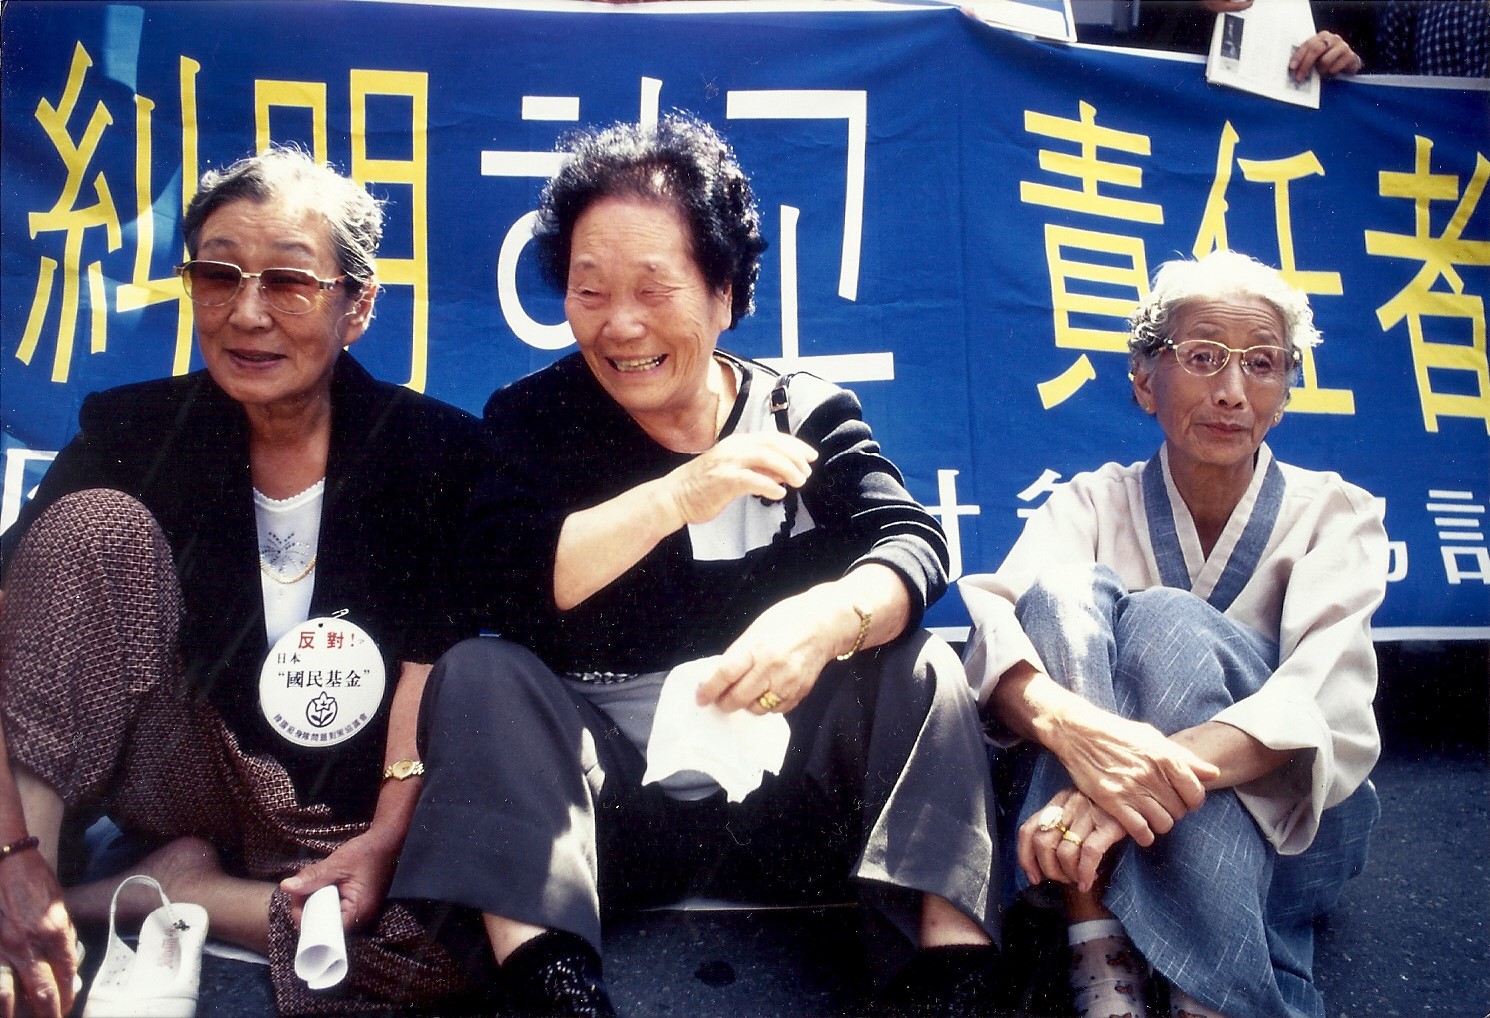  송신도(가운데)가 1998년 9월 16일 서울 종로구 주한일본대사관 앞에서 열린 제330차 수요시위에 참석해 웃어보이고 있다. 왼쪽은 김복동, 오른쪽은 김순덕. ⓒ가와타 후미코